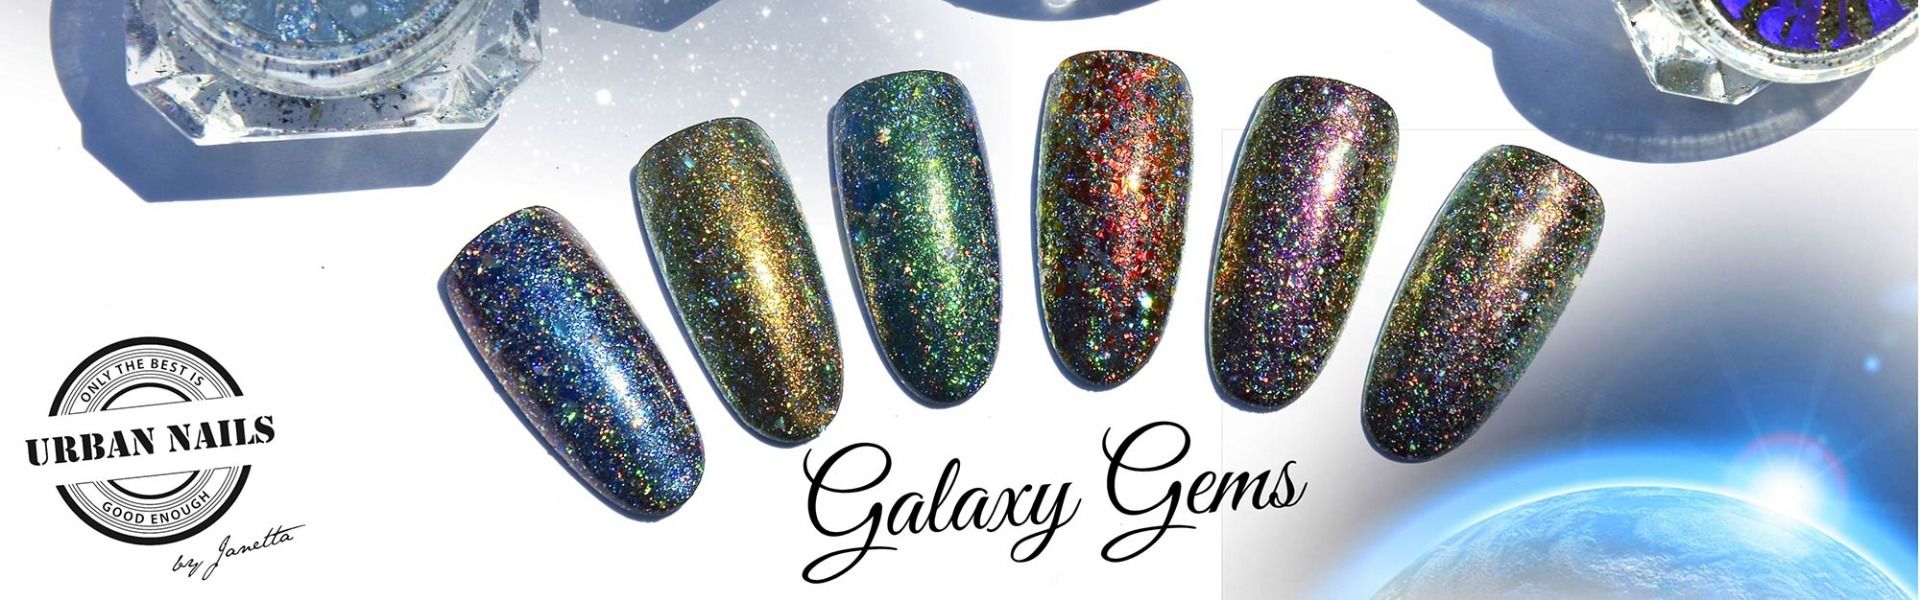 GG Galaxy Gems